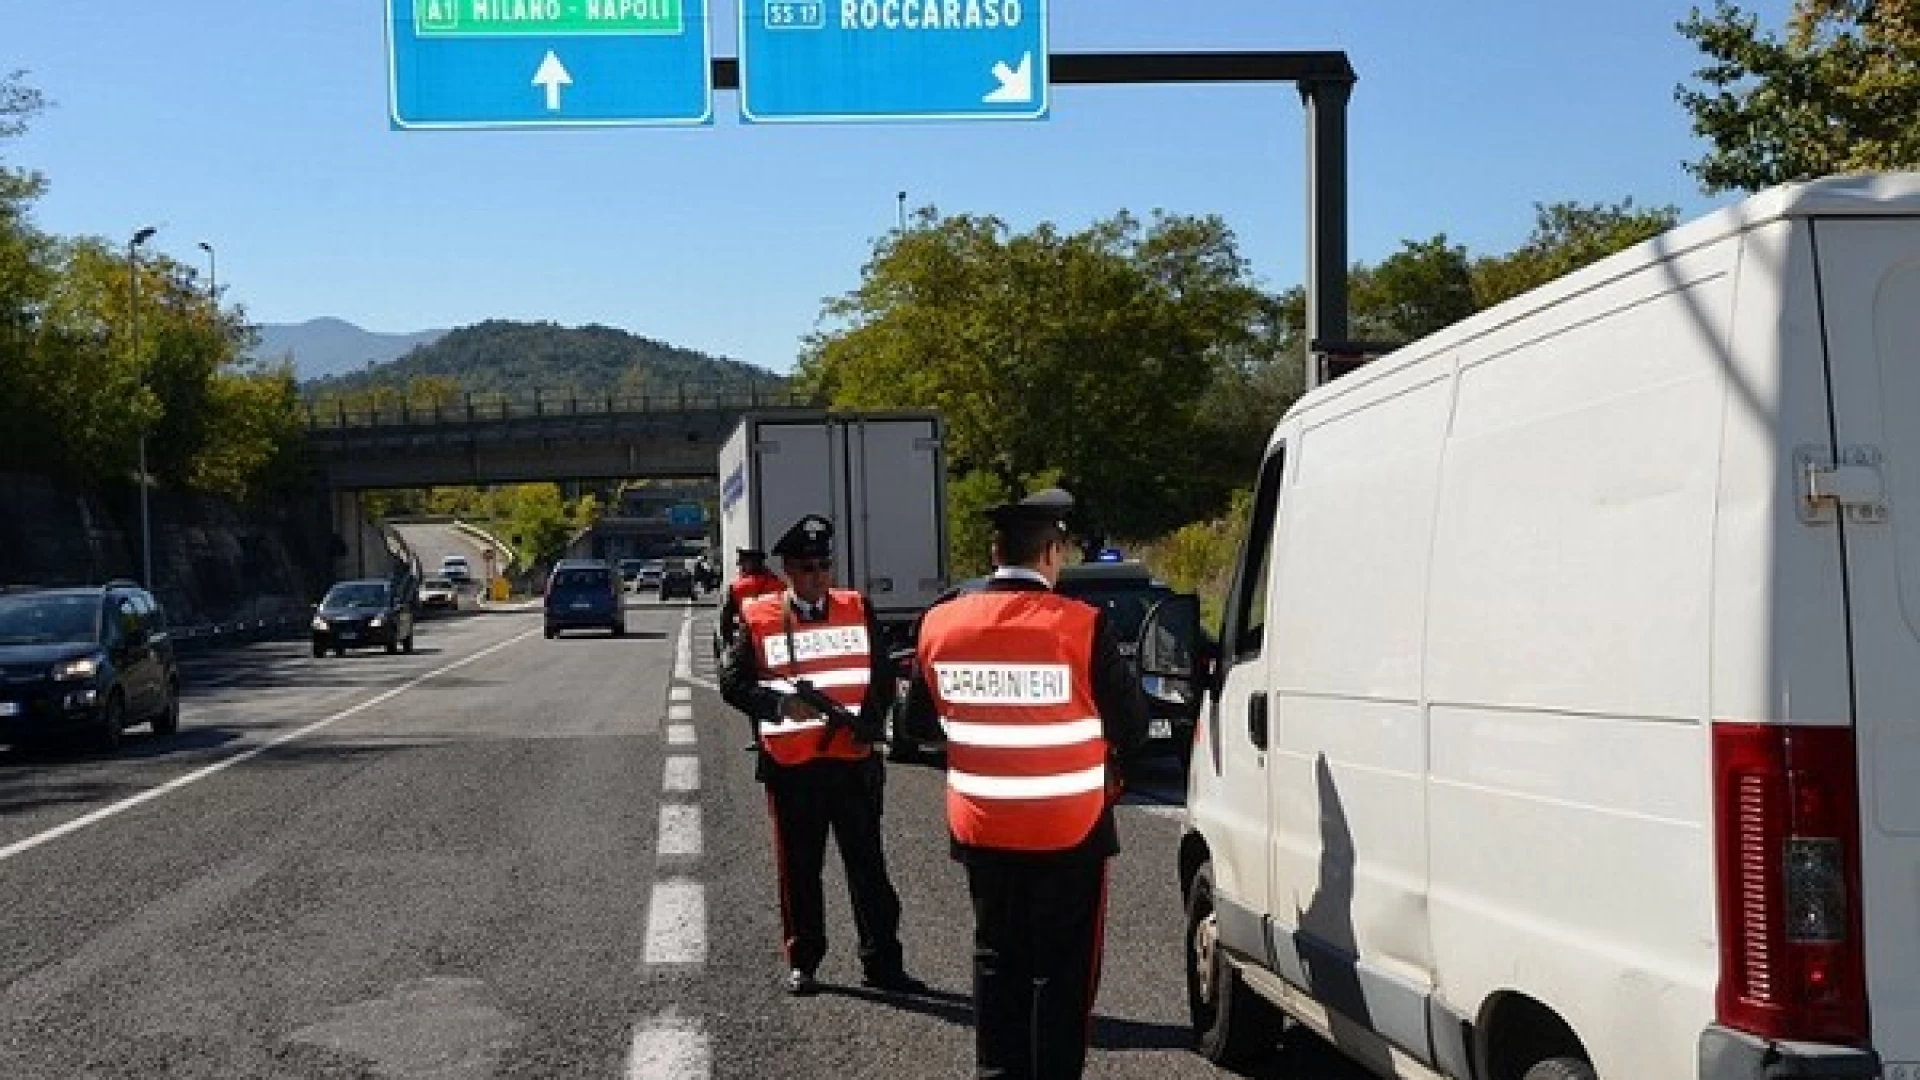 Isernia: proseguono i servizi di controllo del territorio da parte dei Carabinieri